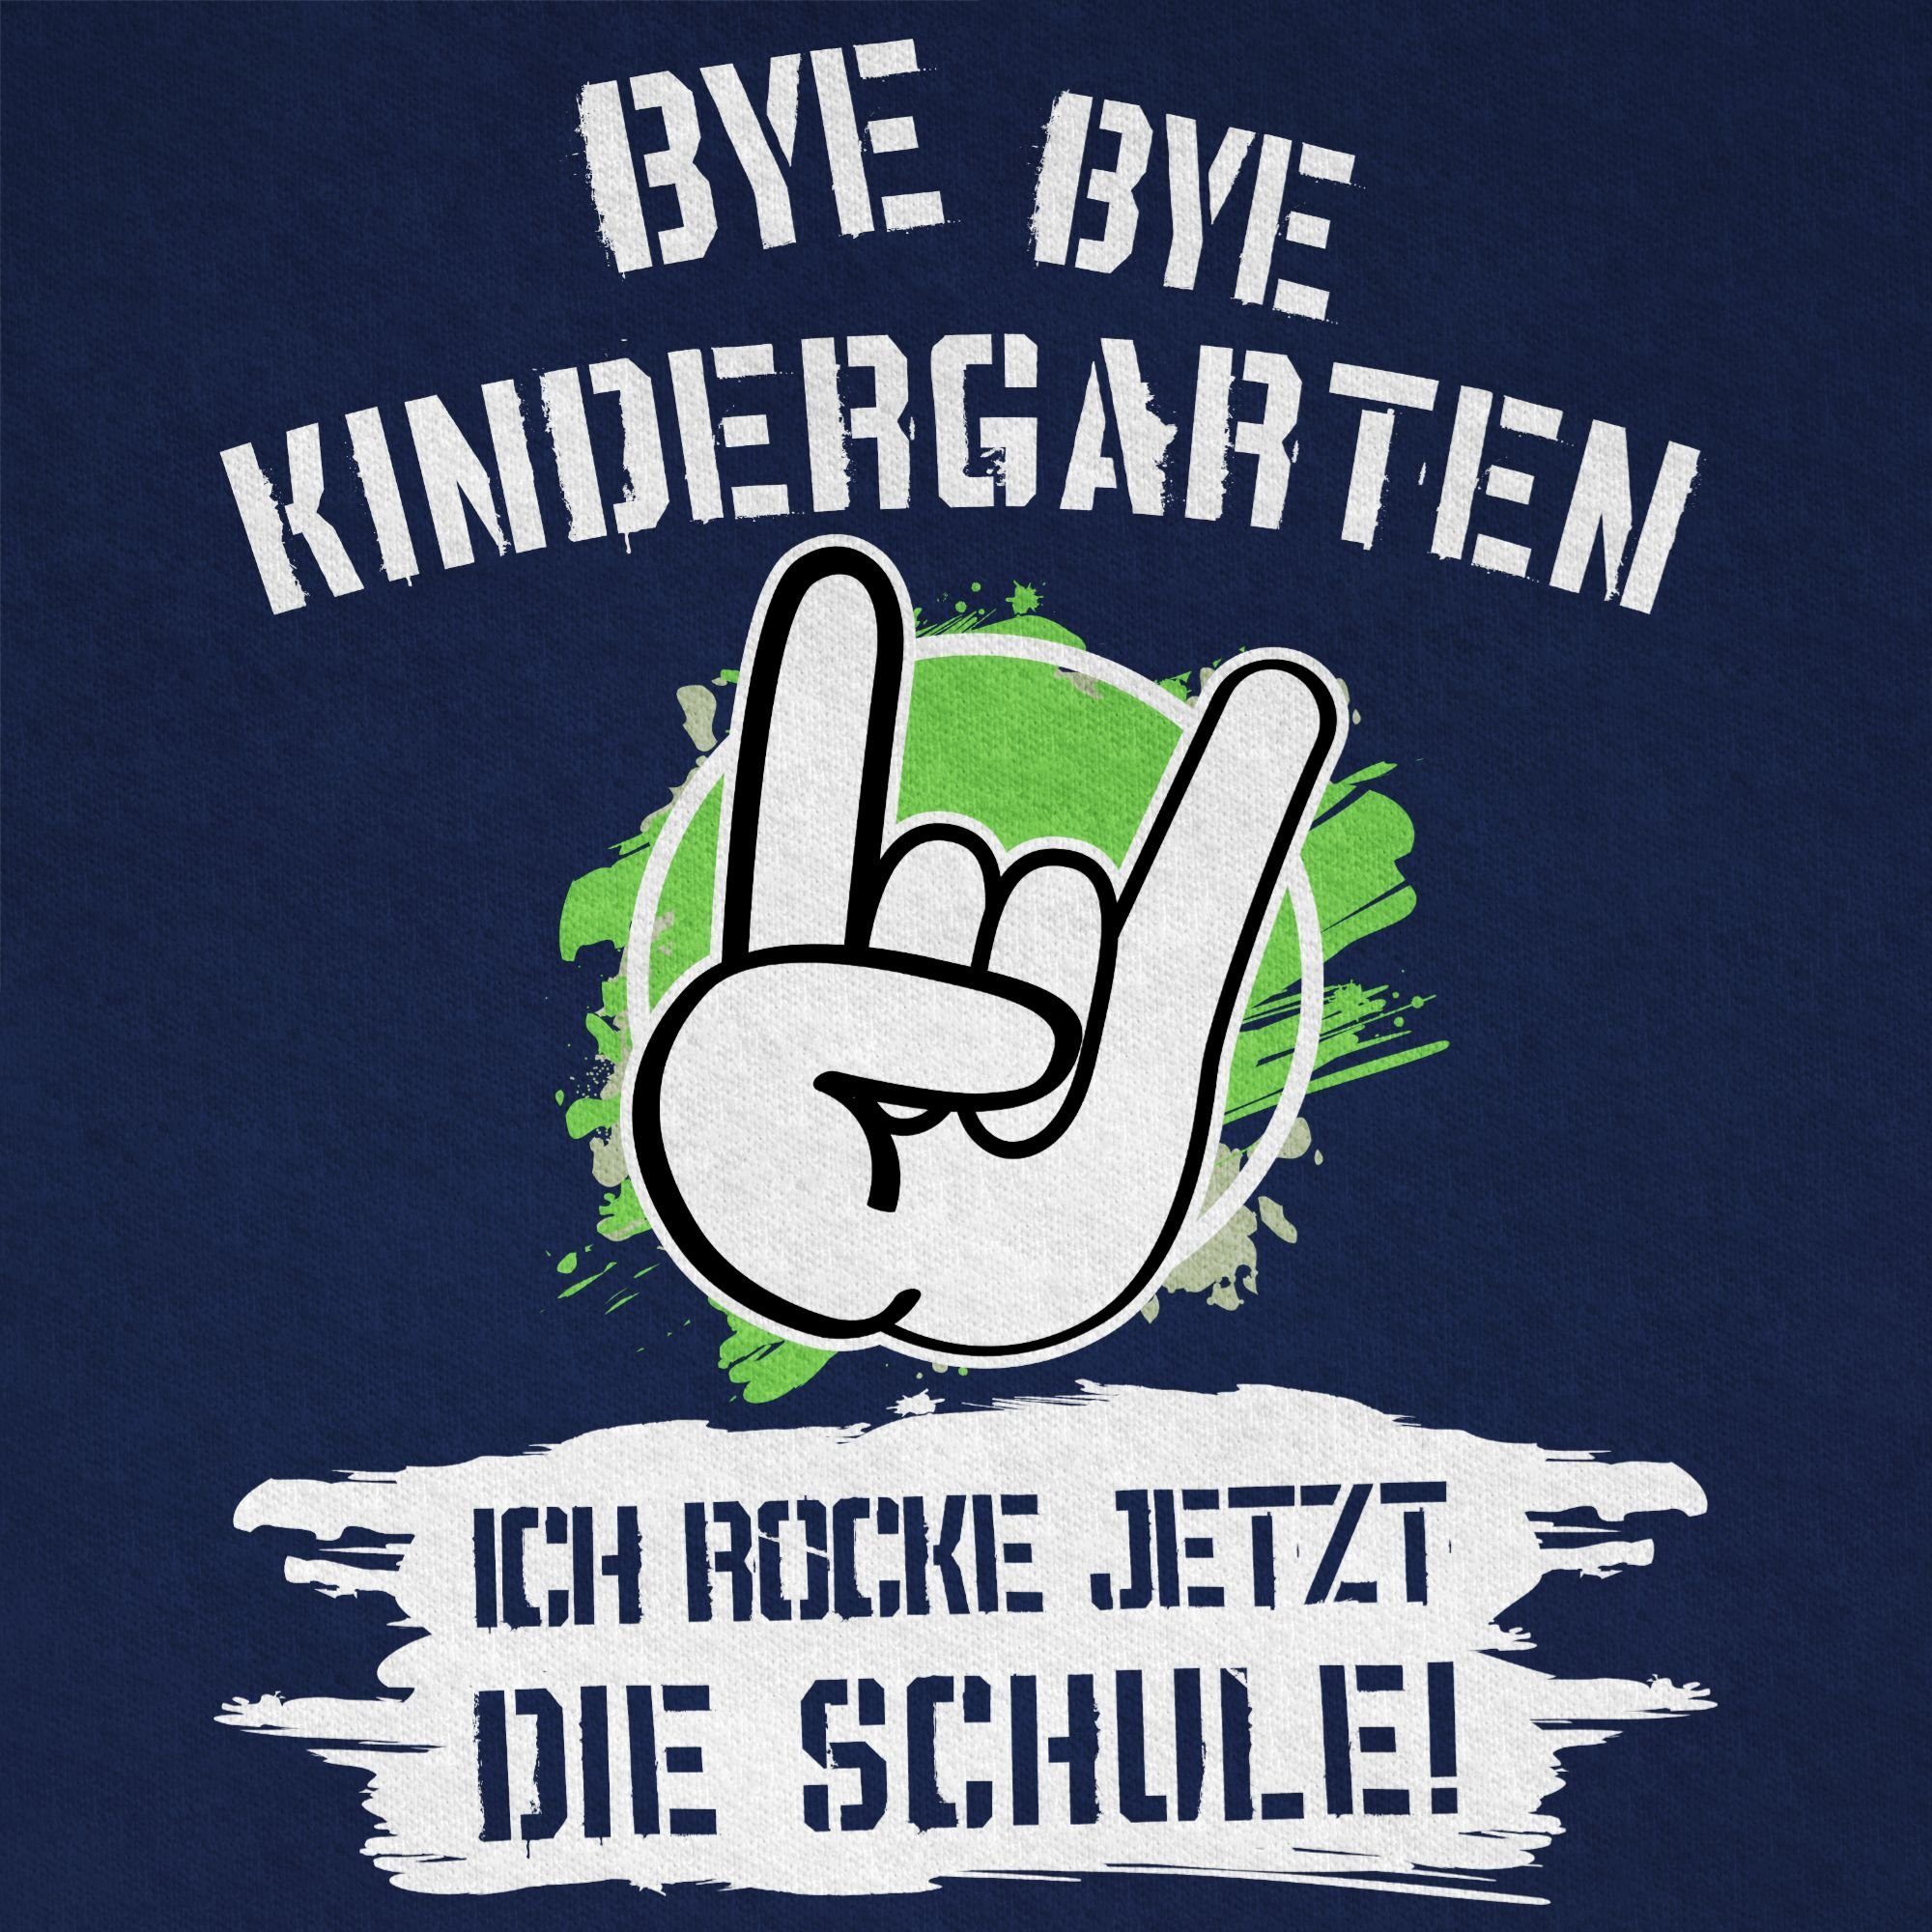 Shirtracer Geschenke Dunkelblau Schulanfang Bye Kindergarten jetzt ich rocke T-Shirt Einschulung Bye die 02 Junge Schule